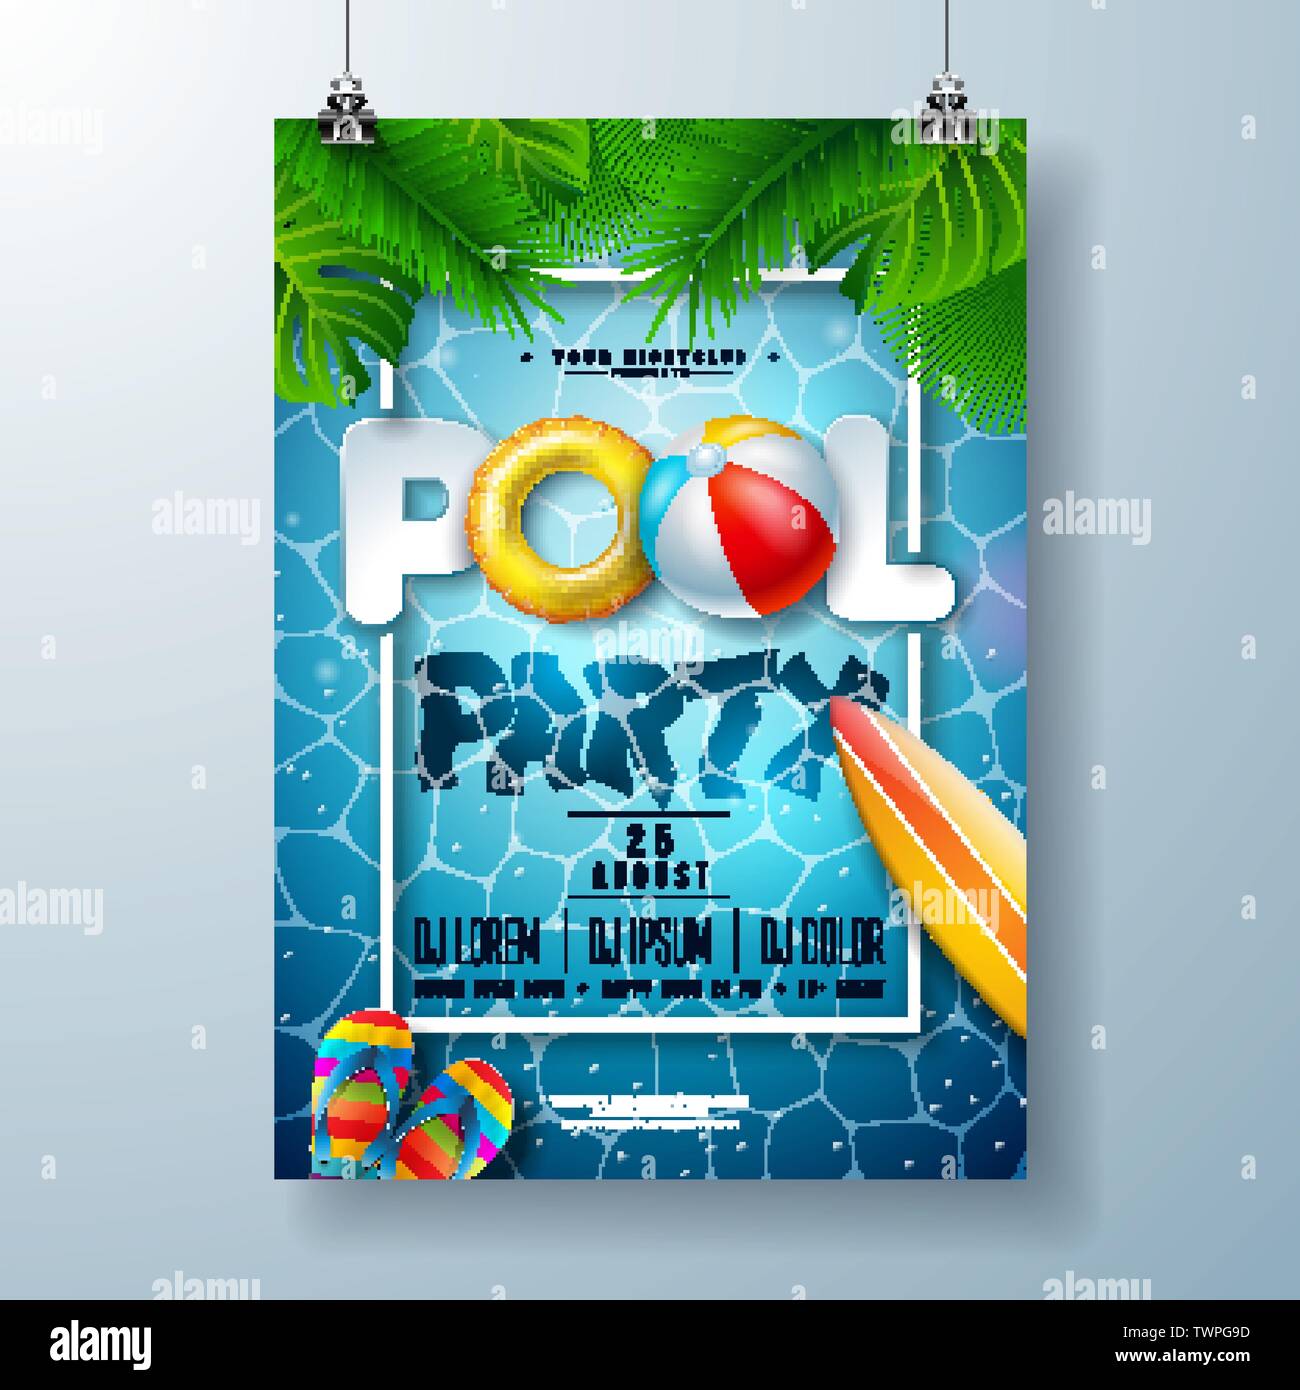 Sommer Pool Party Poster Design Template mit Palmblättern, Wasser, Wasserball und Schwimmen auf blauen Ozean Landschaft Hintergrund. Vektor Feiertag Illustration Stock Vektor